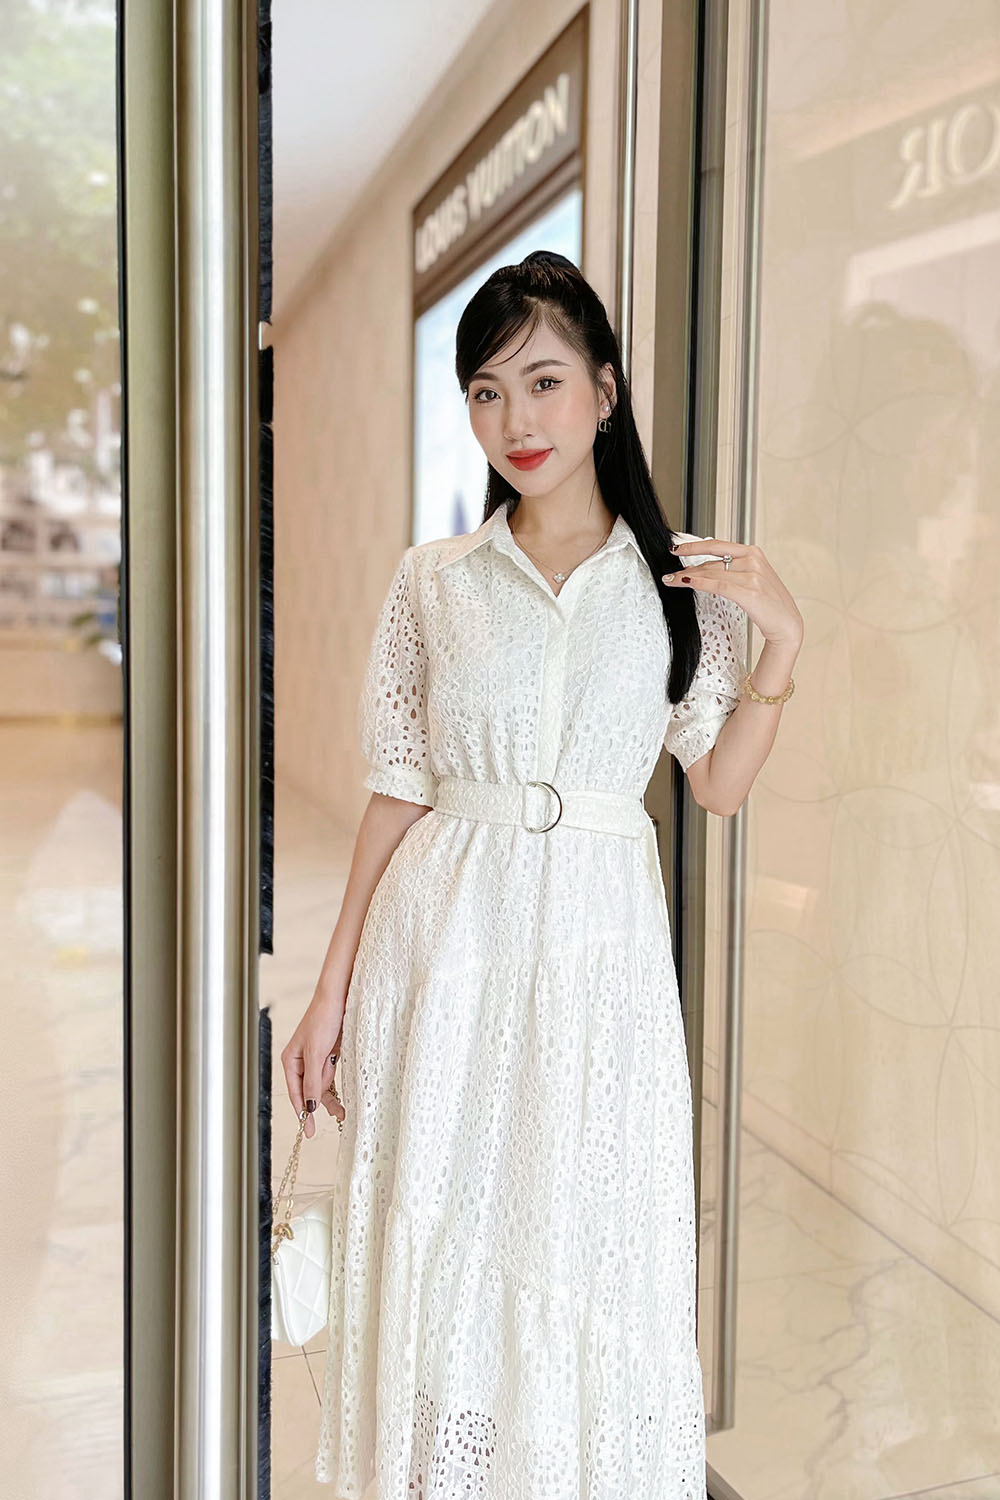 Đầm váy nữ trắng xòe đính nơ đen Mới 100%, giá: 250.000đ, gọi: 0938202228,  Huyện Bình Chánh - Hồ Chí Minh, id-17b61700